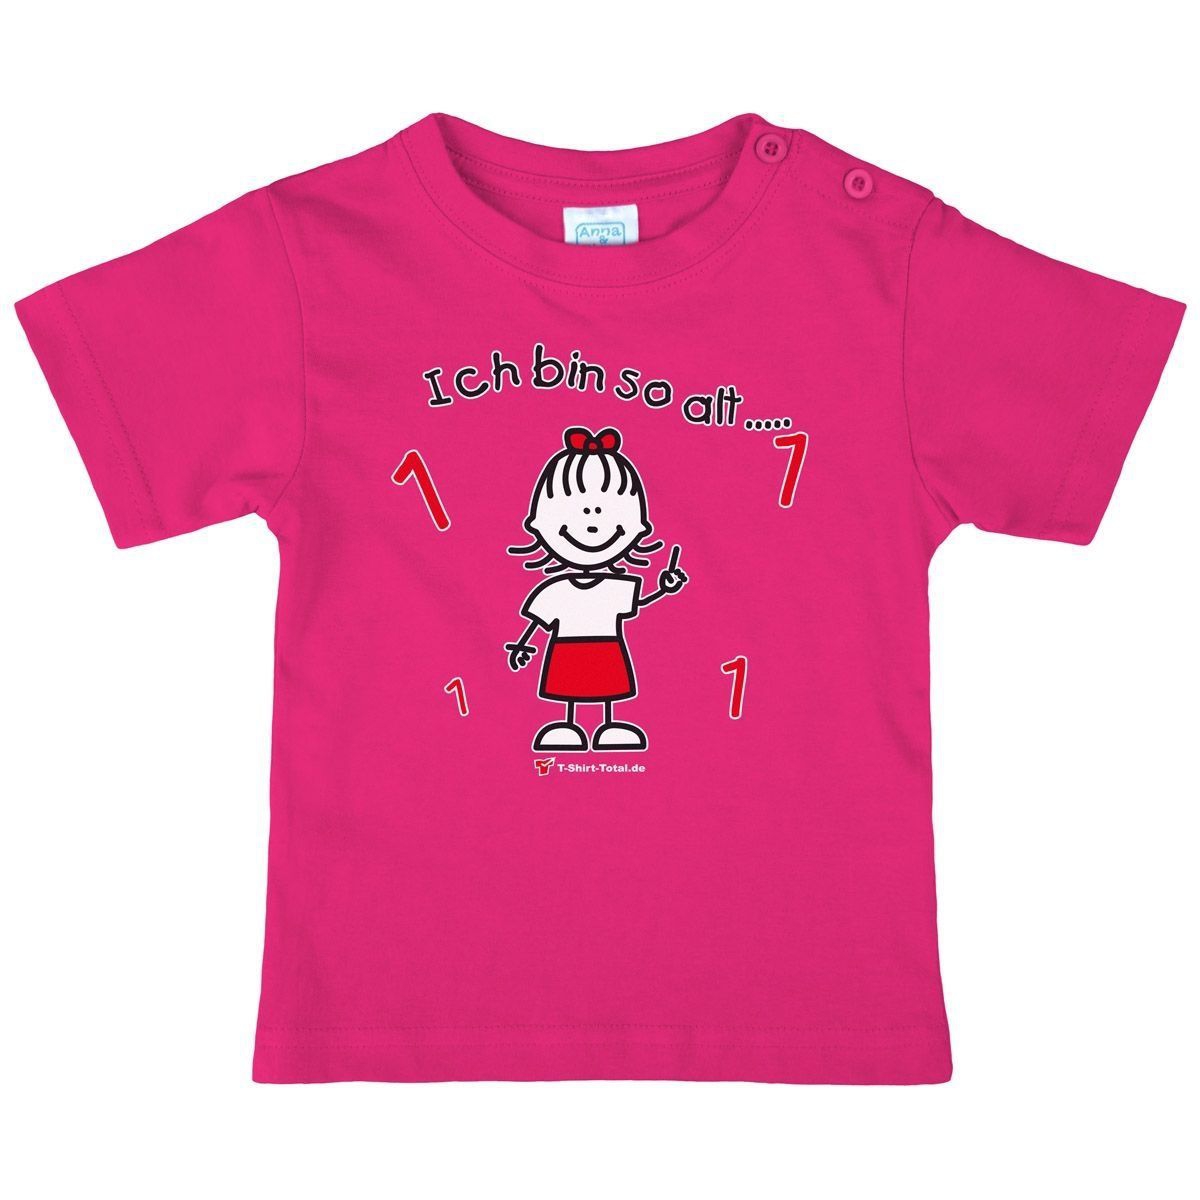 Mädchen so alt 1 Kinder T-Shirt pink 68 / 74